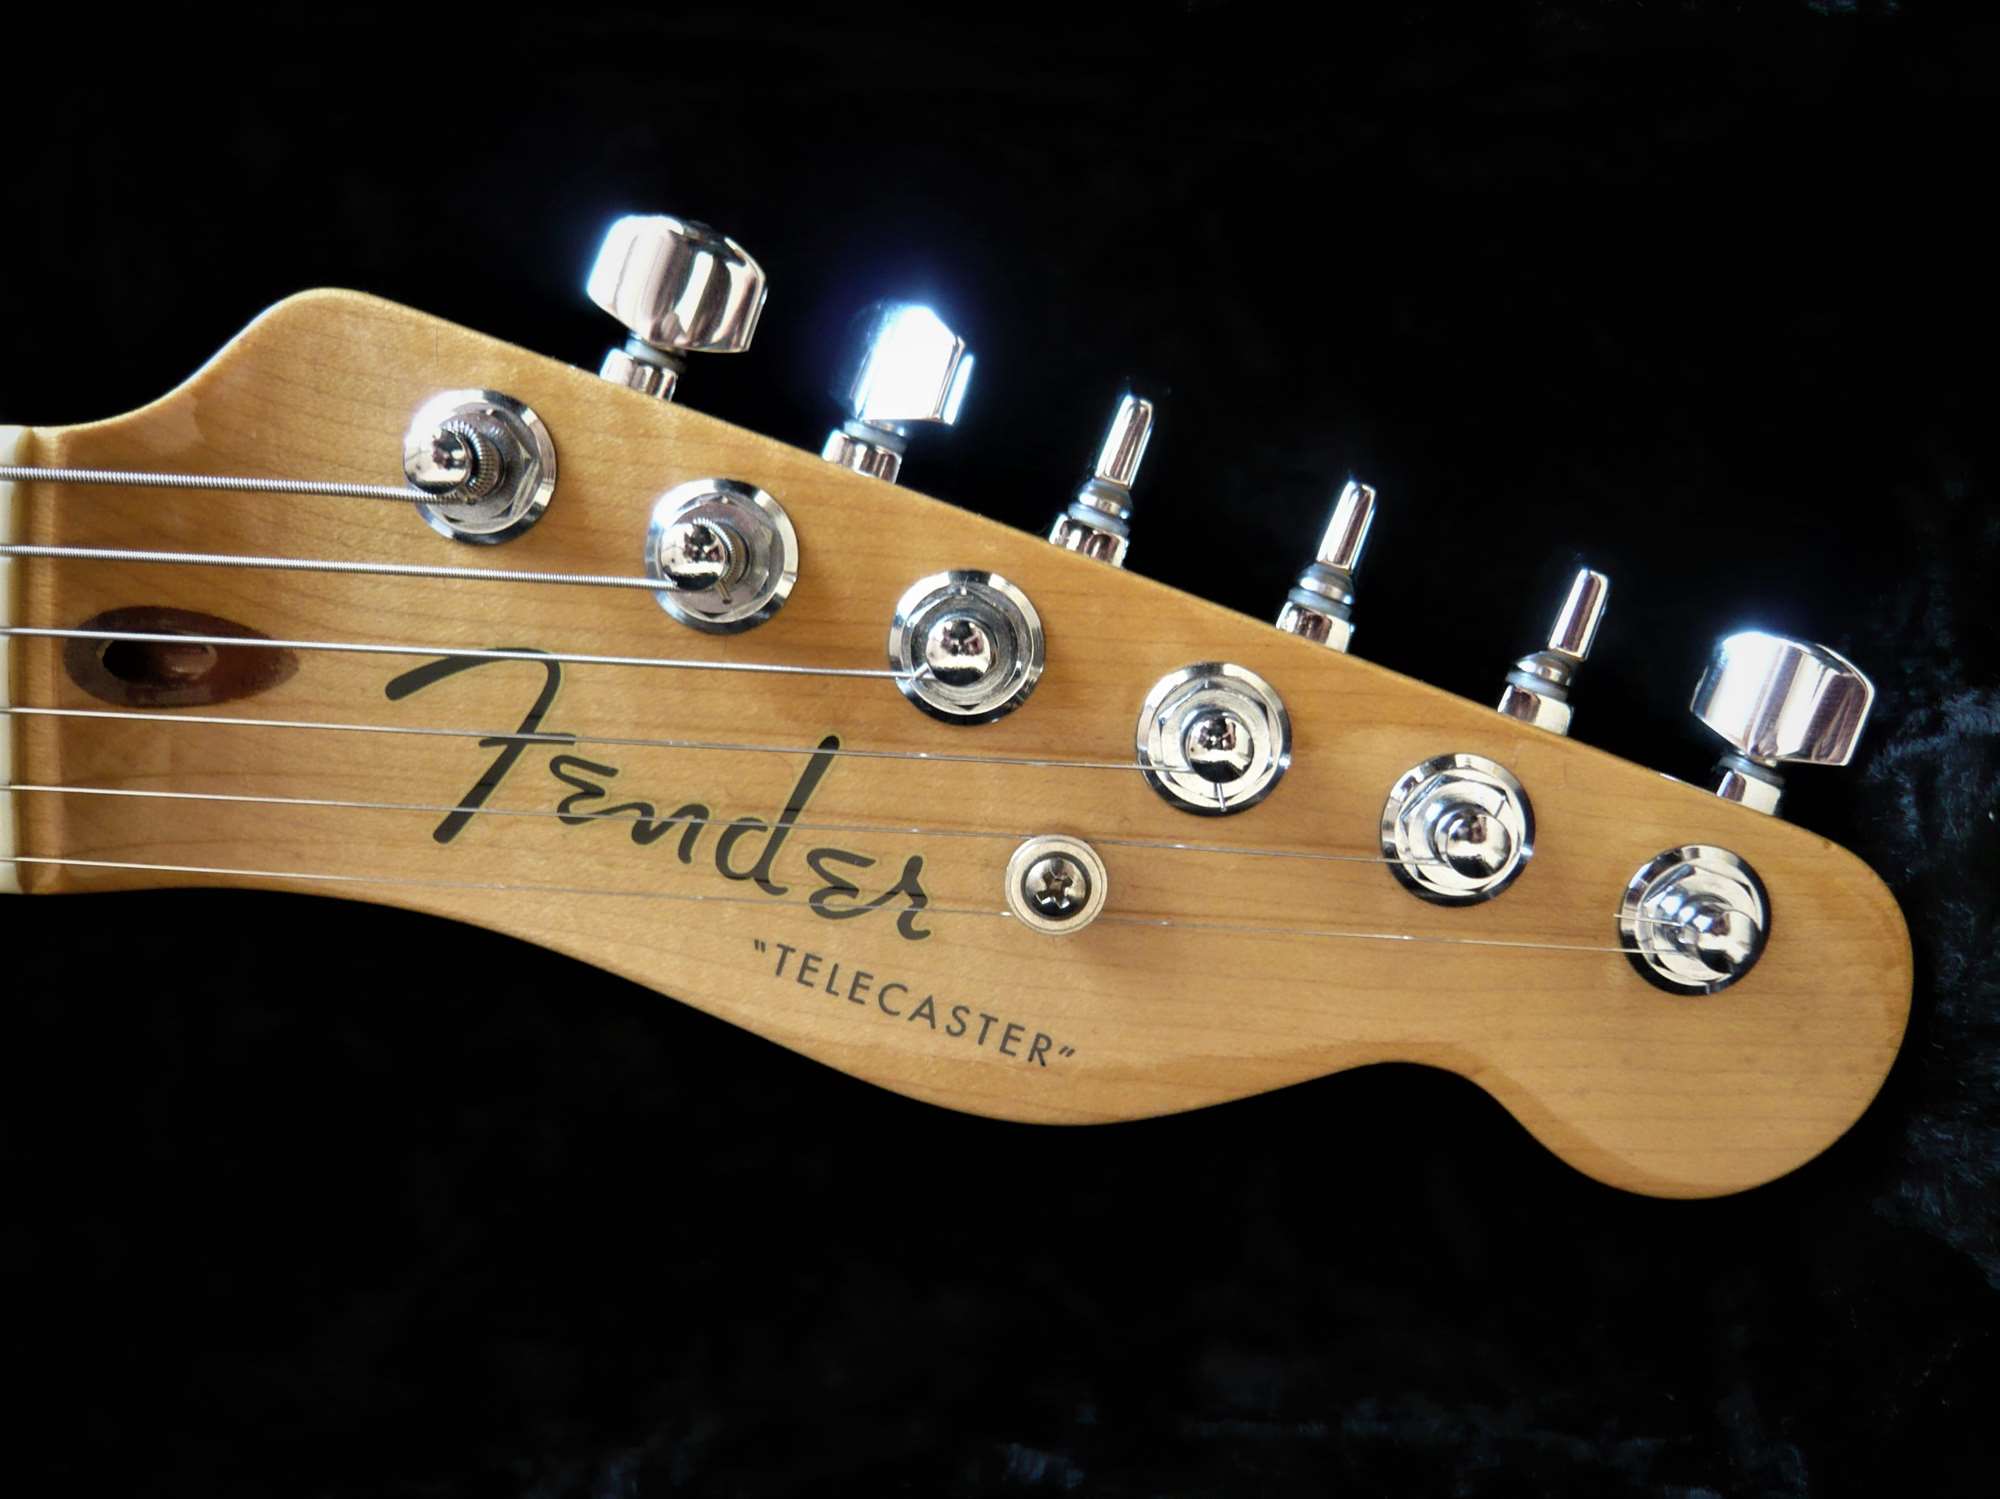 限定製作X010. Fender USA Custom Classic Stratocaster フェンダー カスタムショップ シリアル#CN99123 ストラスト ハードケース付属 フェンダー